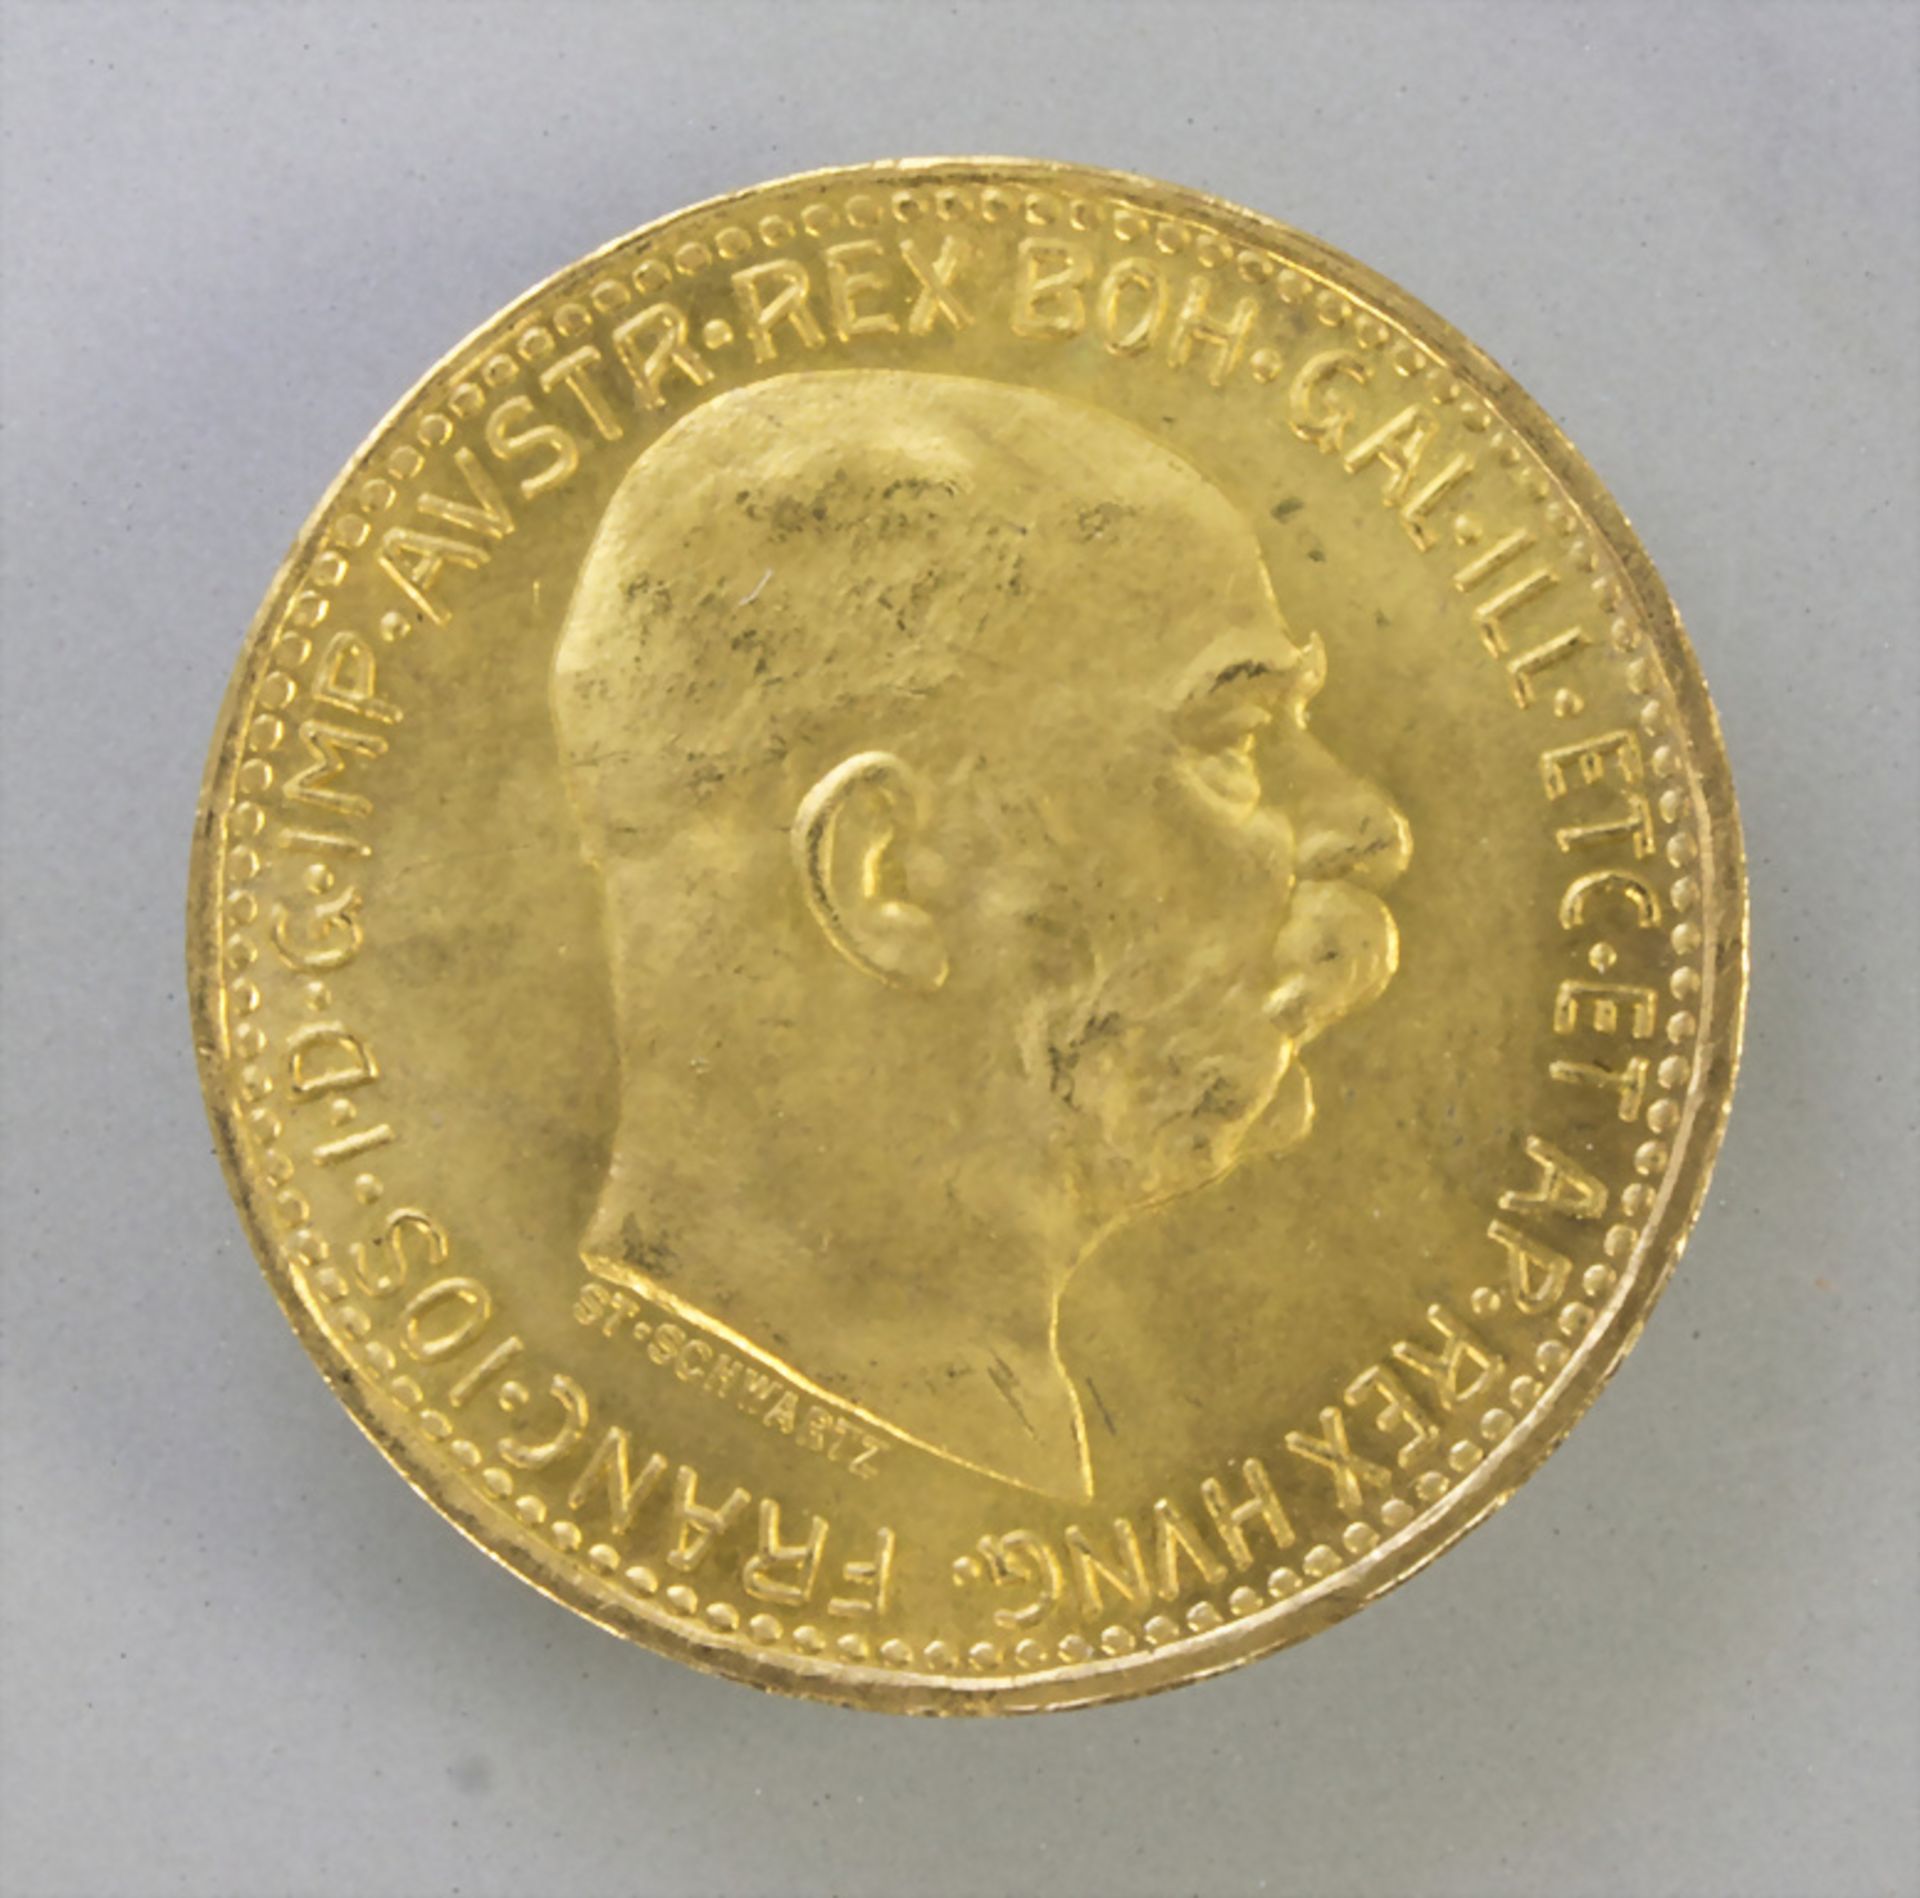 Goldmünze, Österreich, 10 Kronen, 1912  / A gold coin, Austria, 10 crowns, 1912